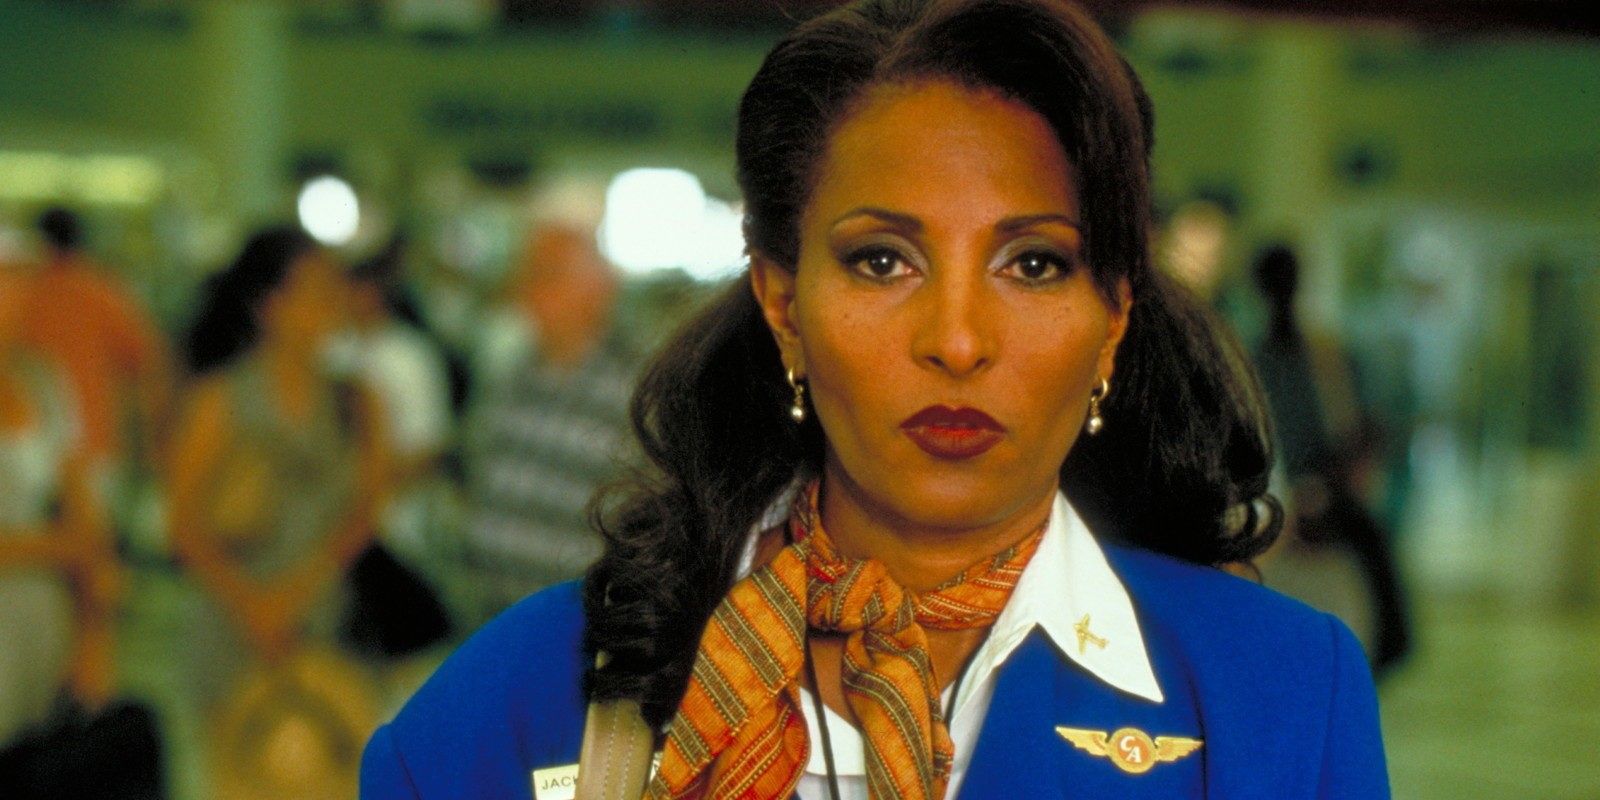 Jackie Brown wears a blue flight attendant jacket